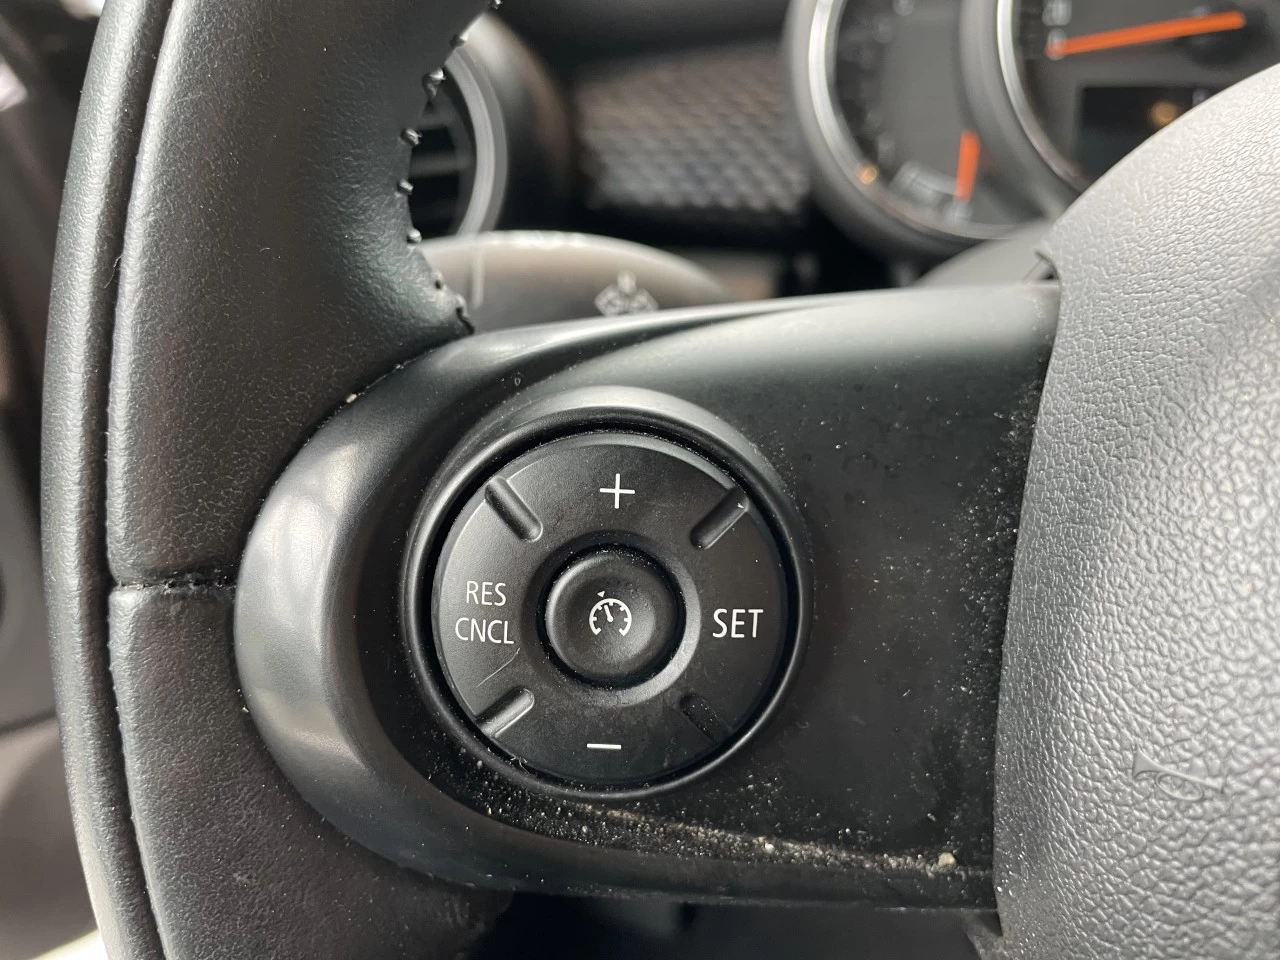 2019 Mini Cooper Cooper S 5 portes Image principale